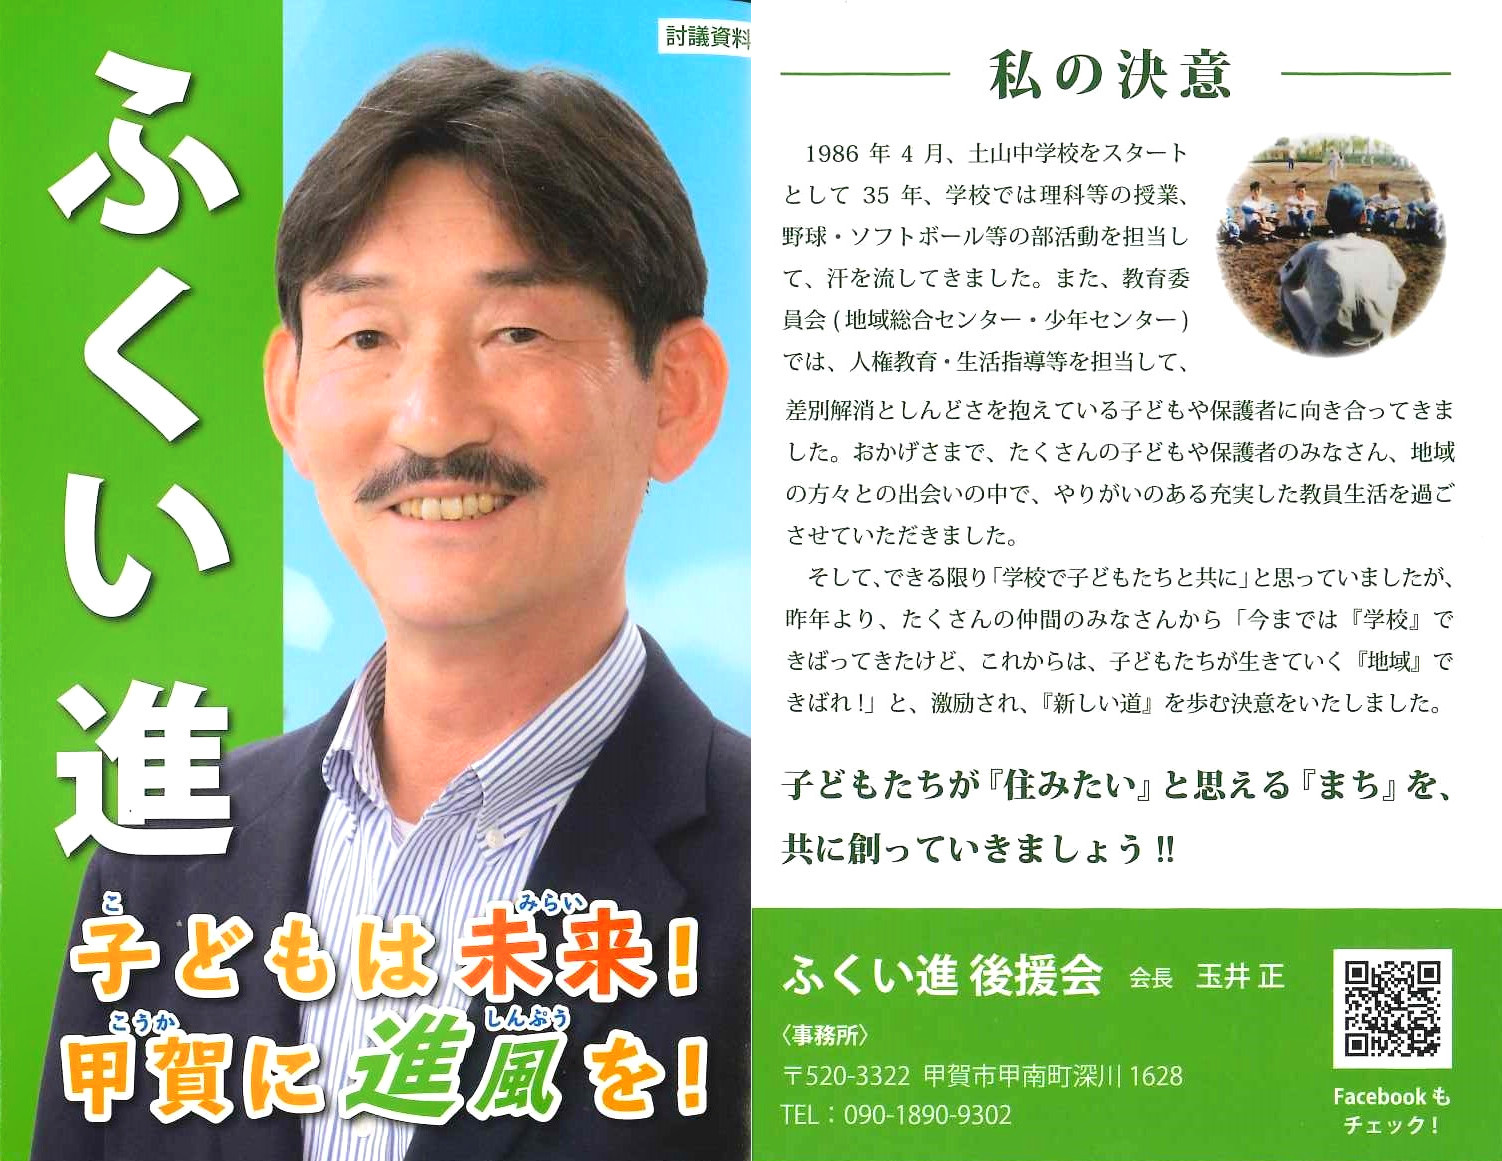 【甲賀市議会議員選挙】ふくい進予定候補の推薦決定しました。